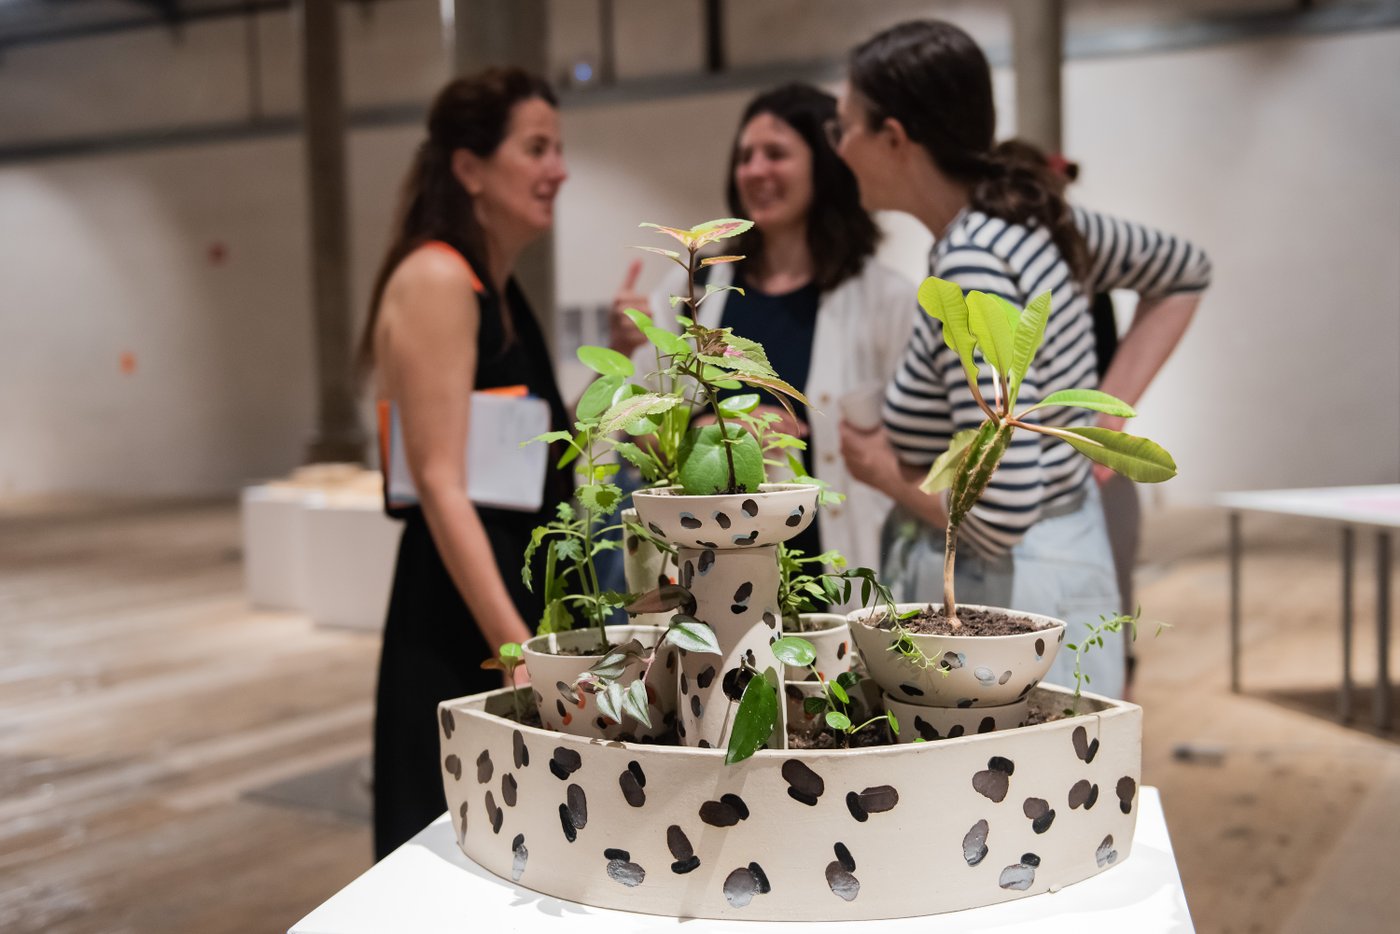 im Vordergrund ein Pflanzengestellt in Keramikvasen, dahinter drei Personen die miteinander reden